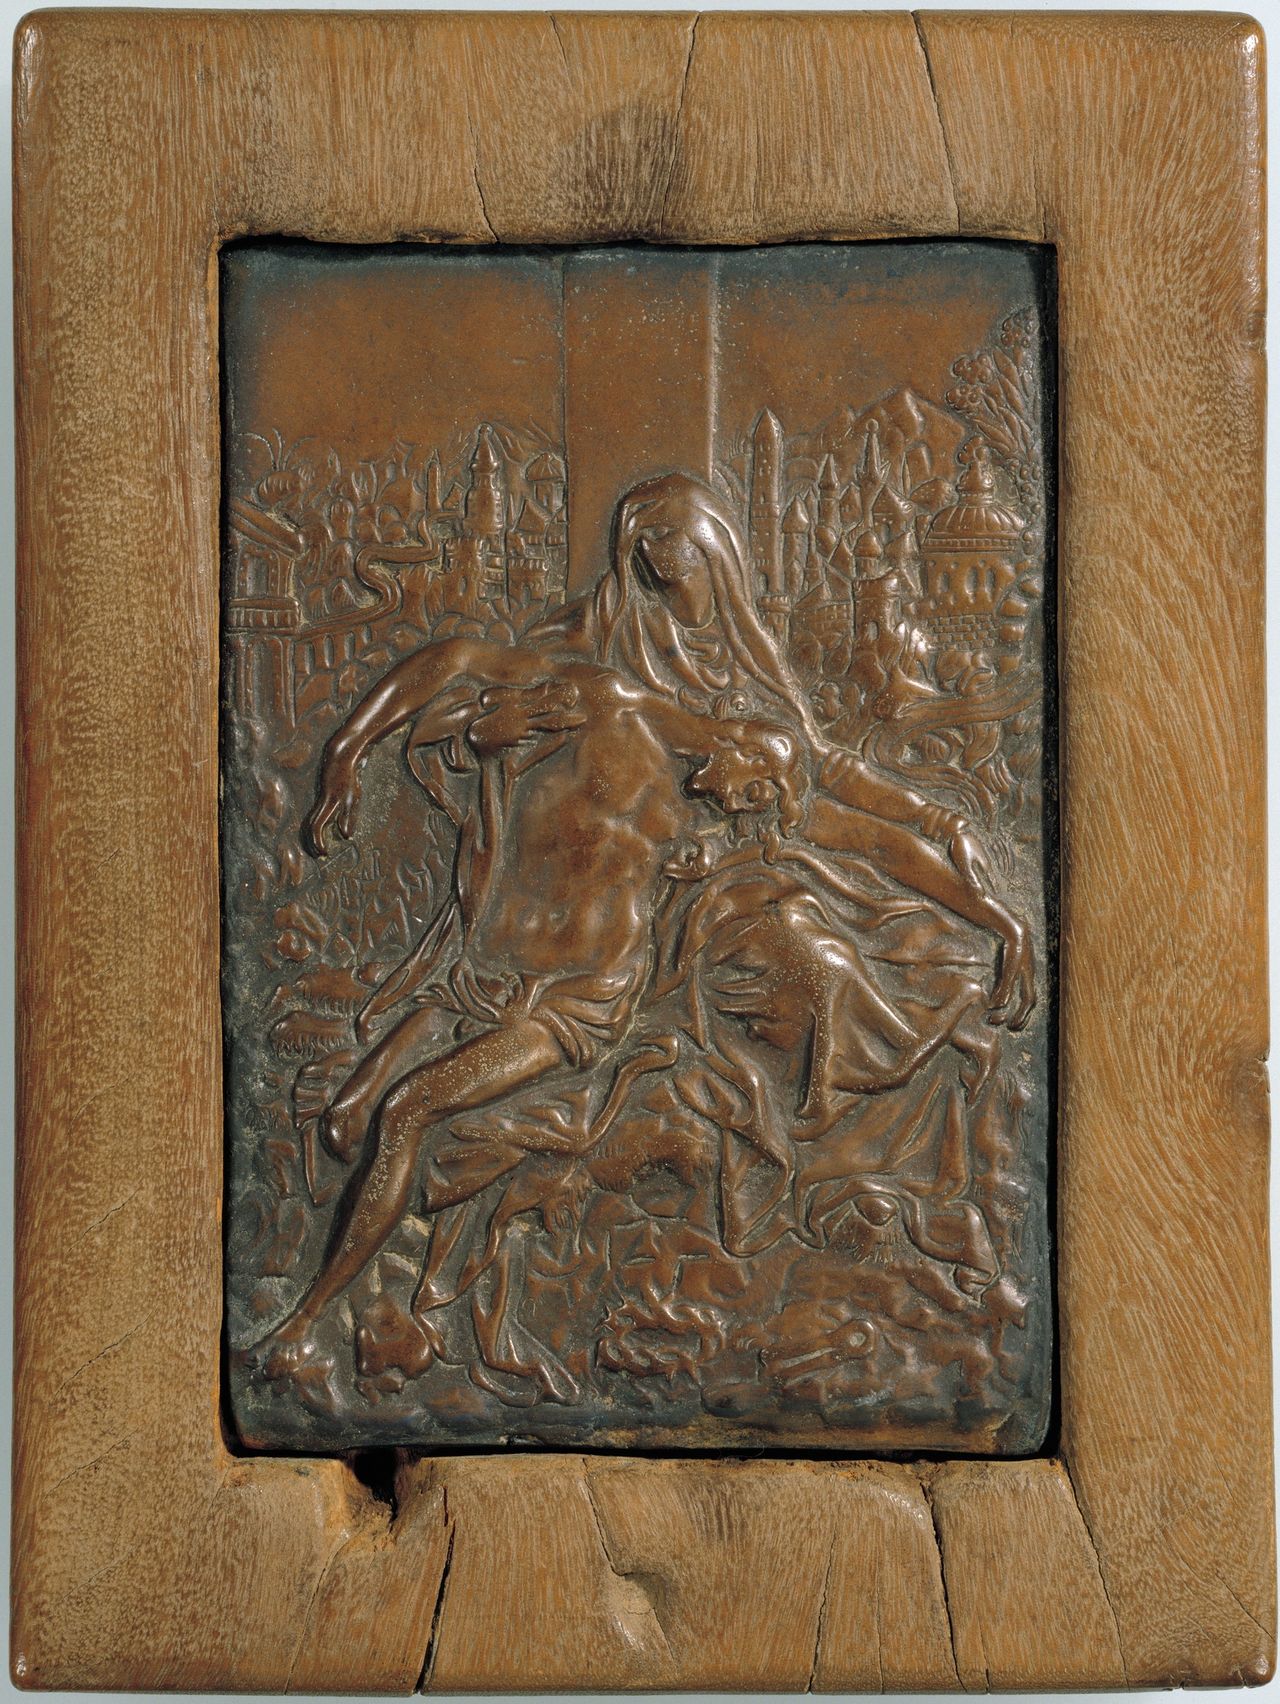 El fumie de bronce enmarcado en madera con una Piedad que inspiró a Endō su novela Chinmoku (Silencio). Declarado bien de importancia cultural, forma parte de la colección del Museo Nacional del Tokio. (Fuente: ColBase)